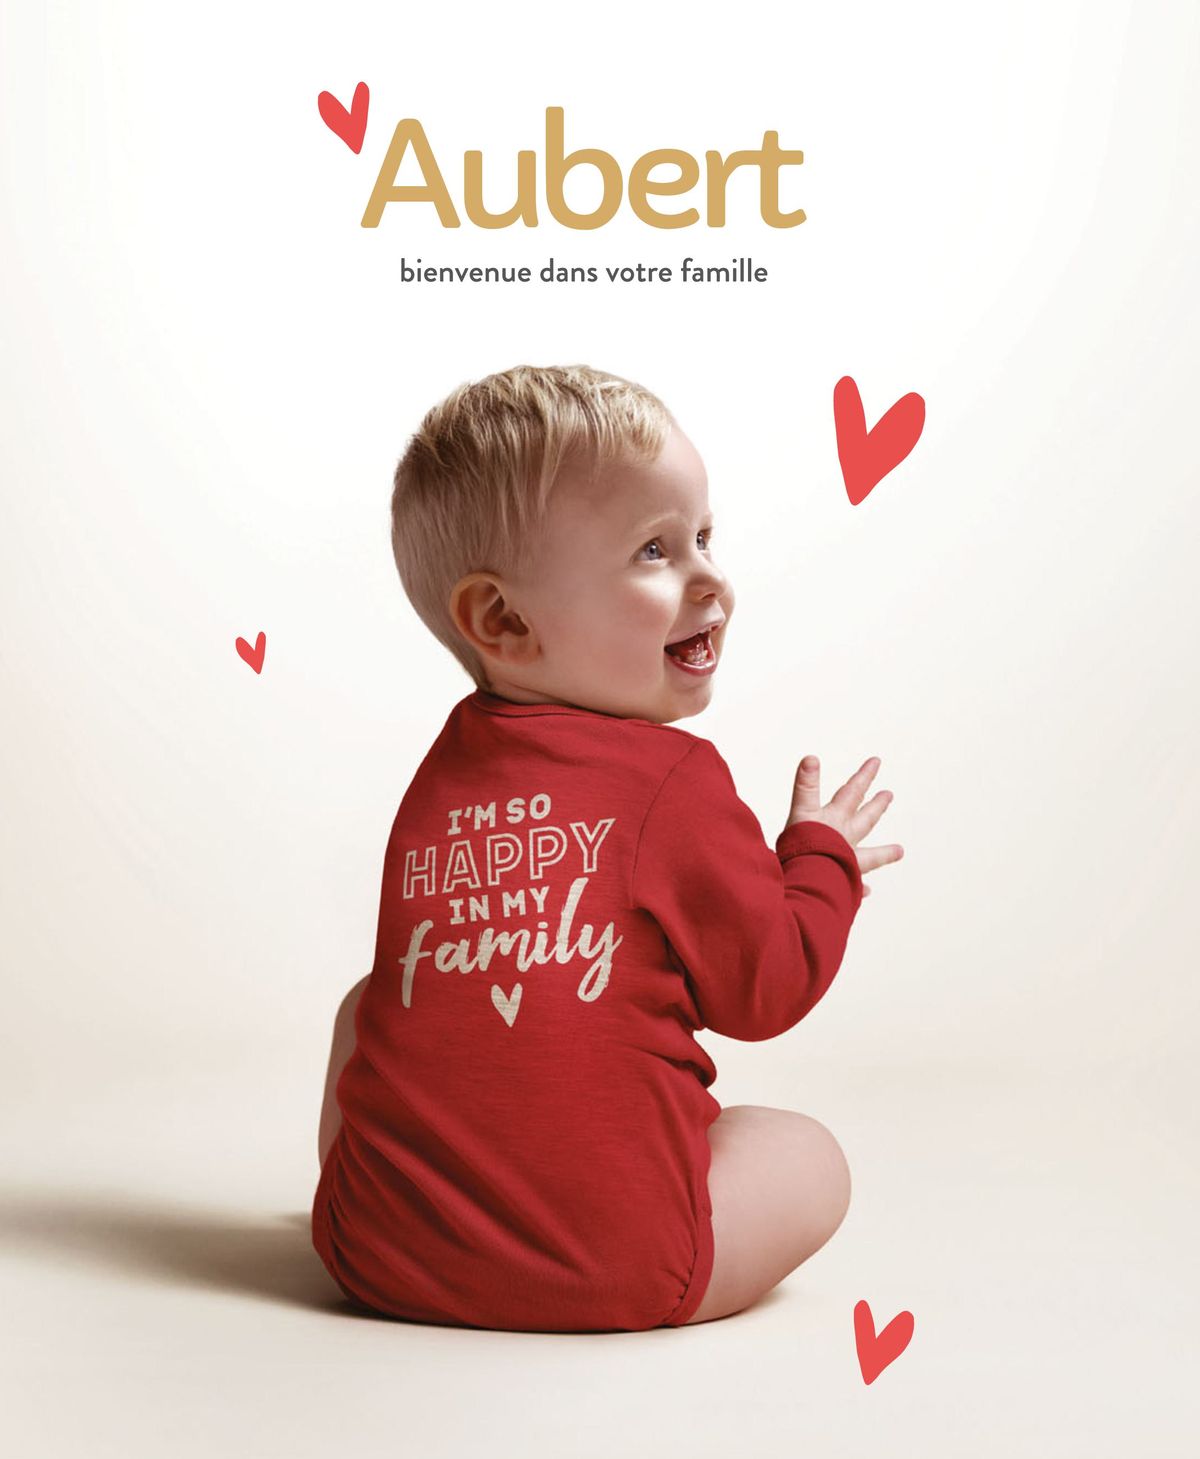 Catalogue Aubert bienvenue dans votre famille, page 00001